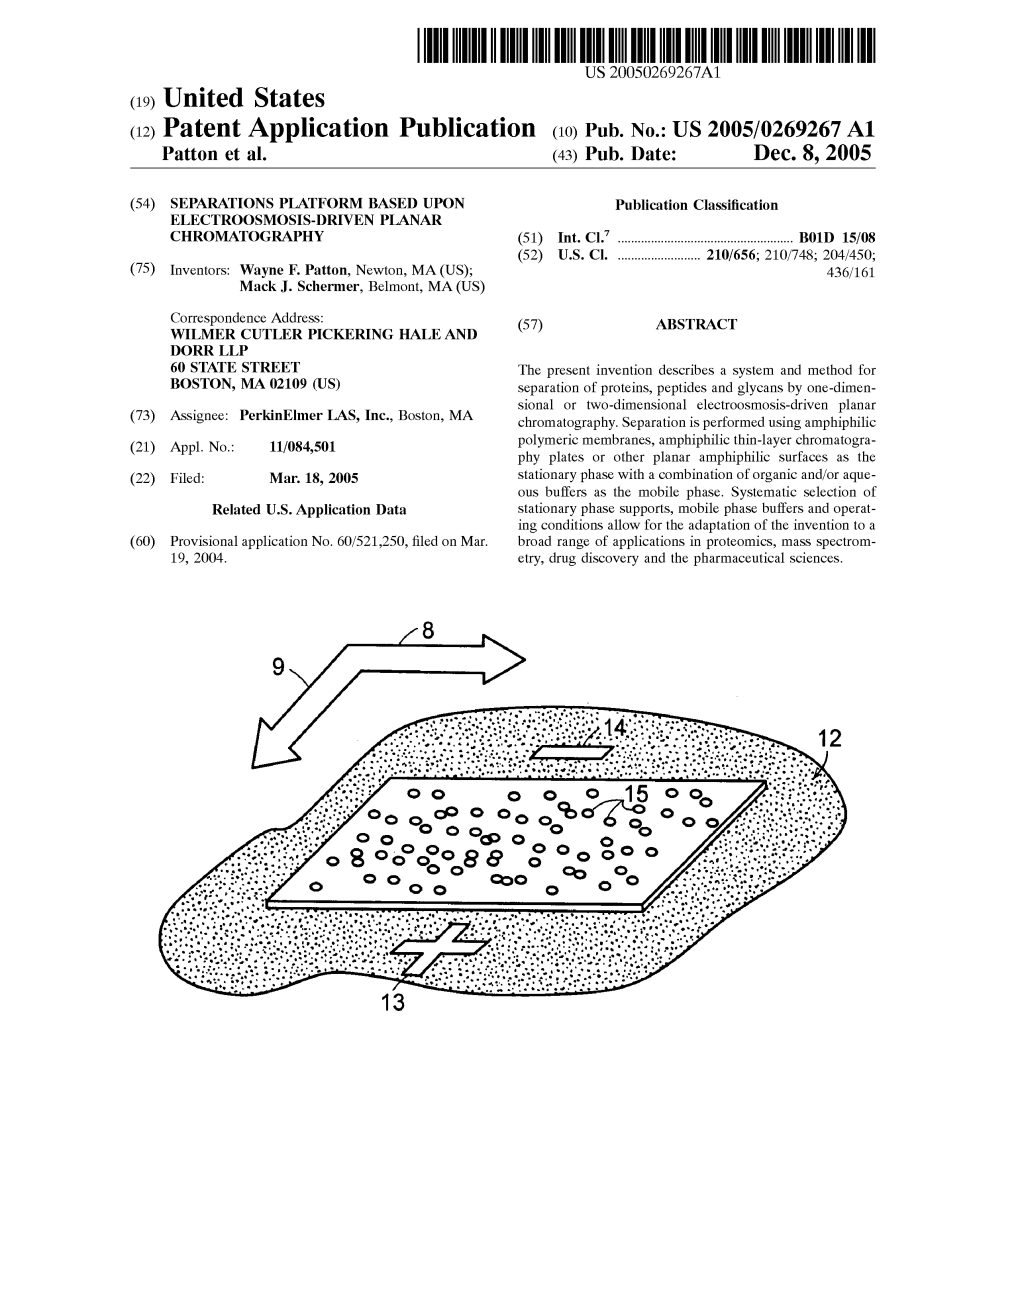 (12) Patent Application Publication (10) Pub. No.: US 2005/0269267 A1 Patton Et Al